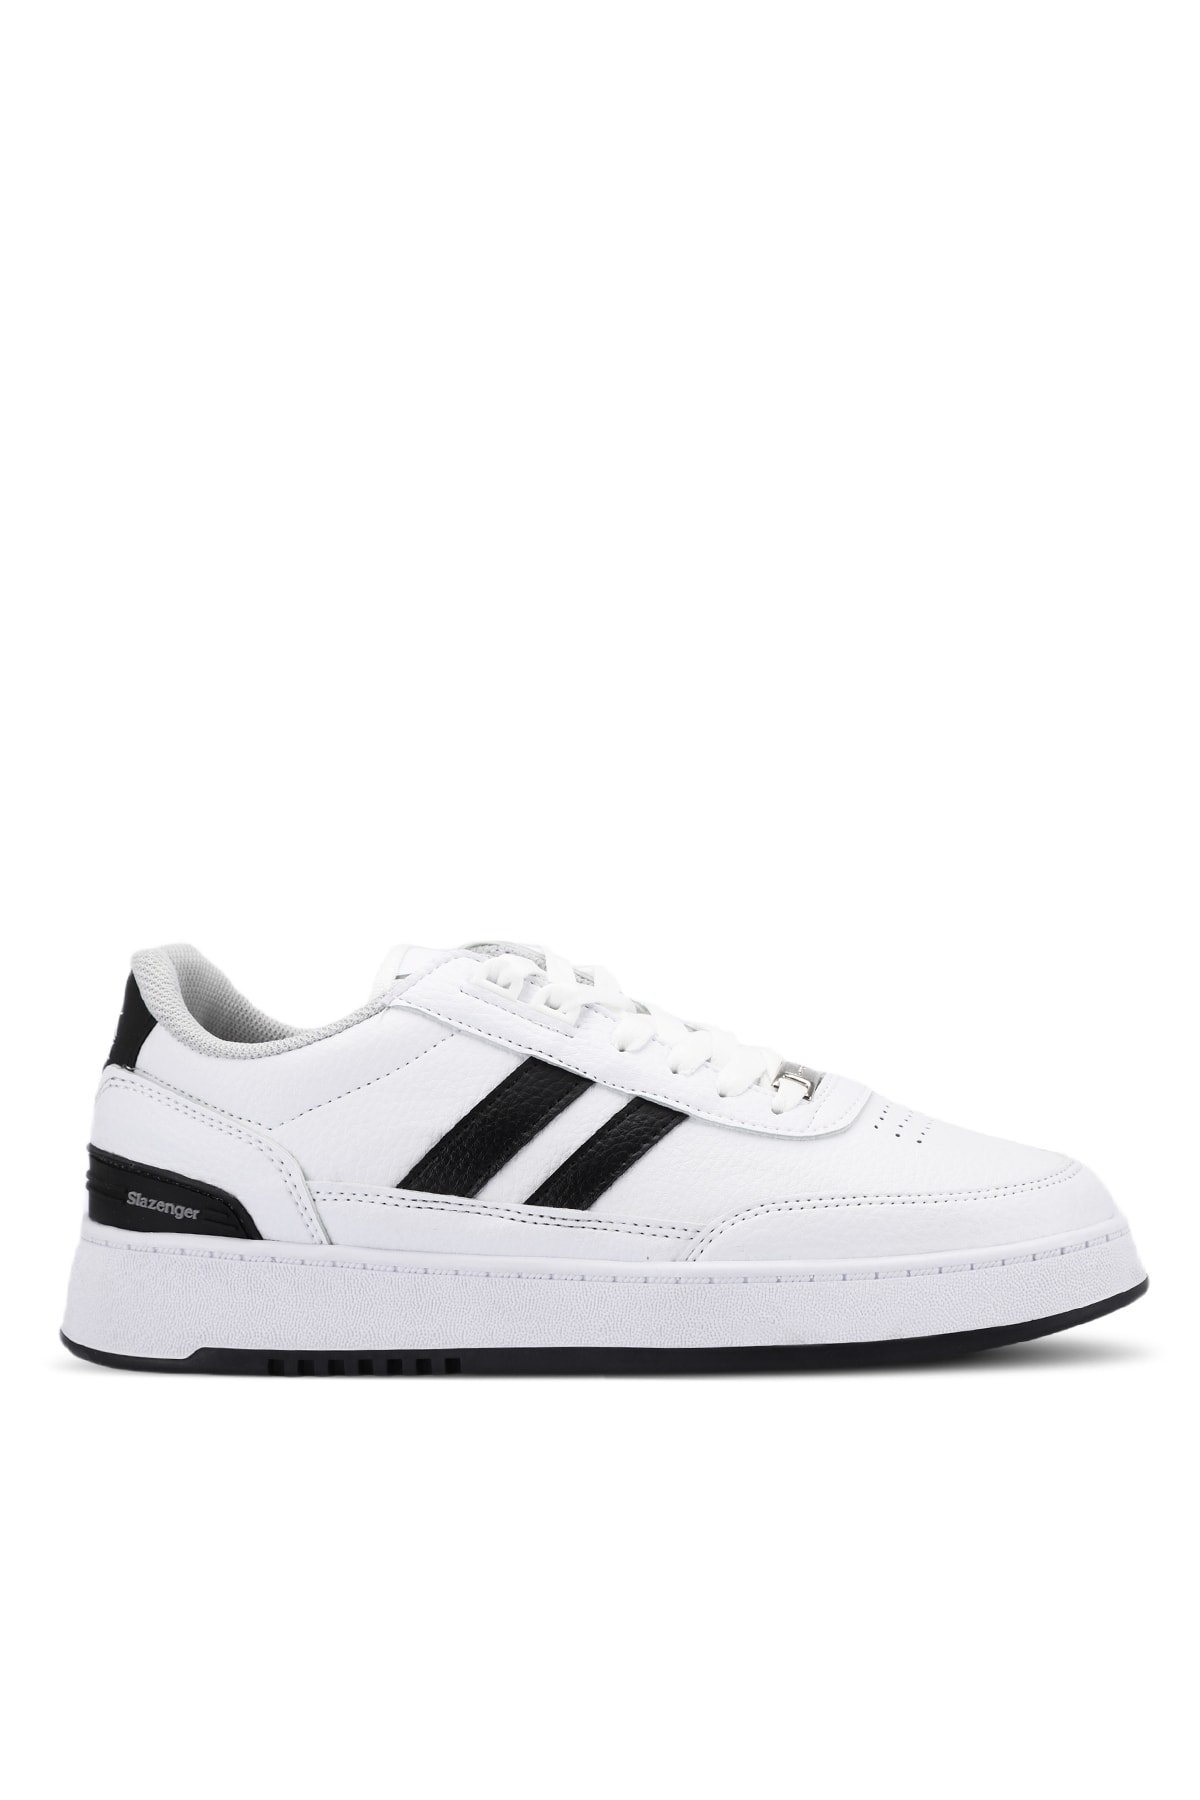 Levně Slazenger DAPHNE Sneaker Mens Shoes White / Black